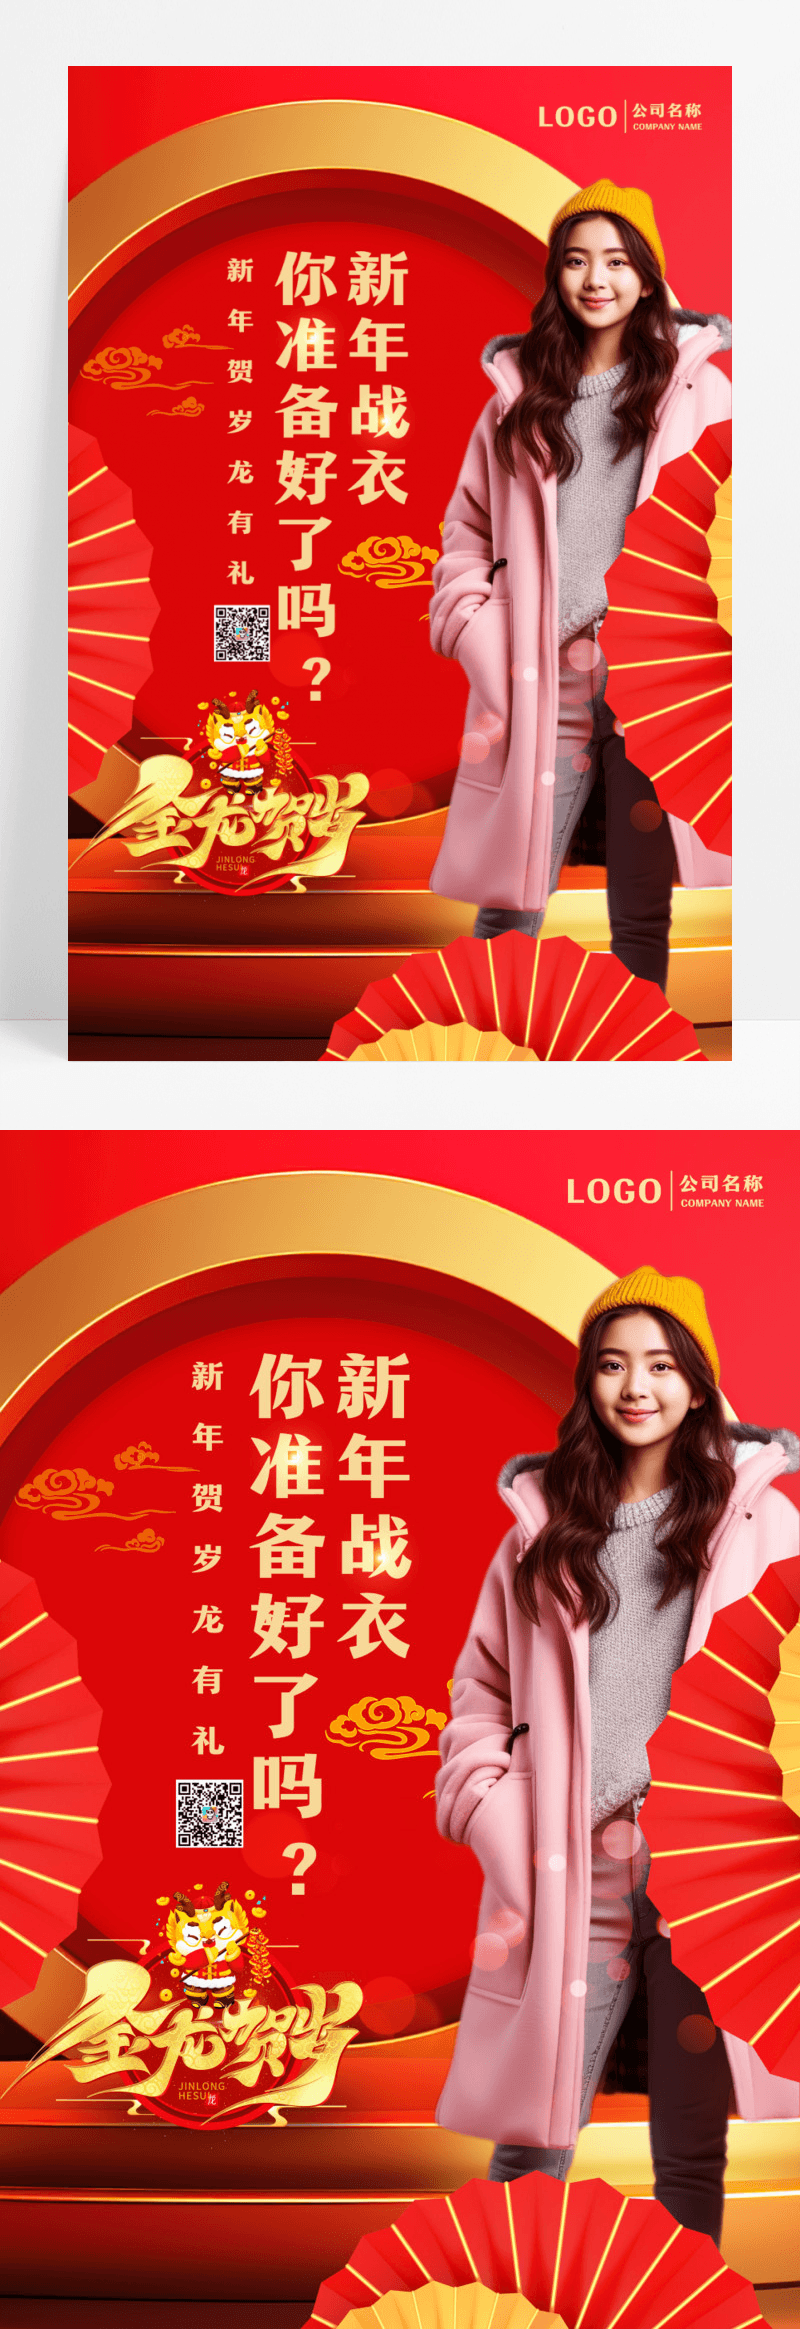 简约龙年贺岁新年春节服装宣传海报设计